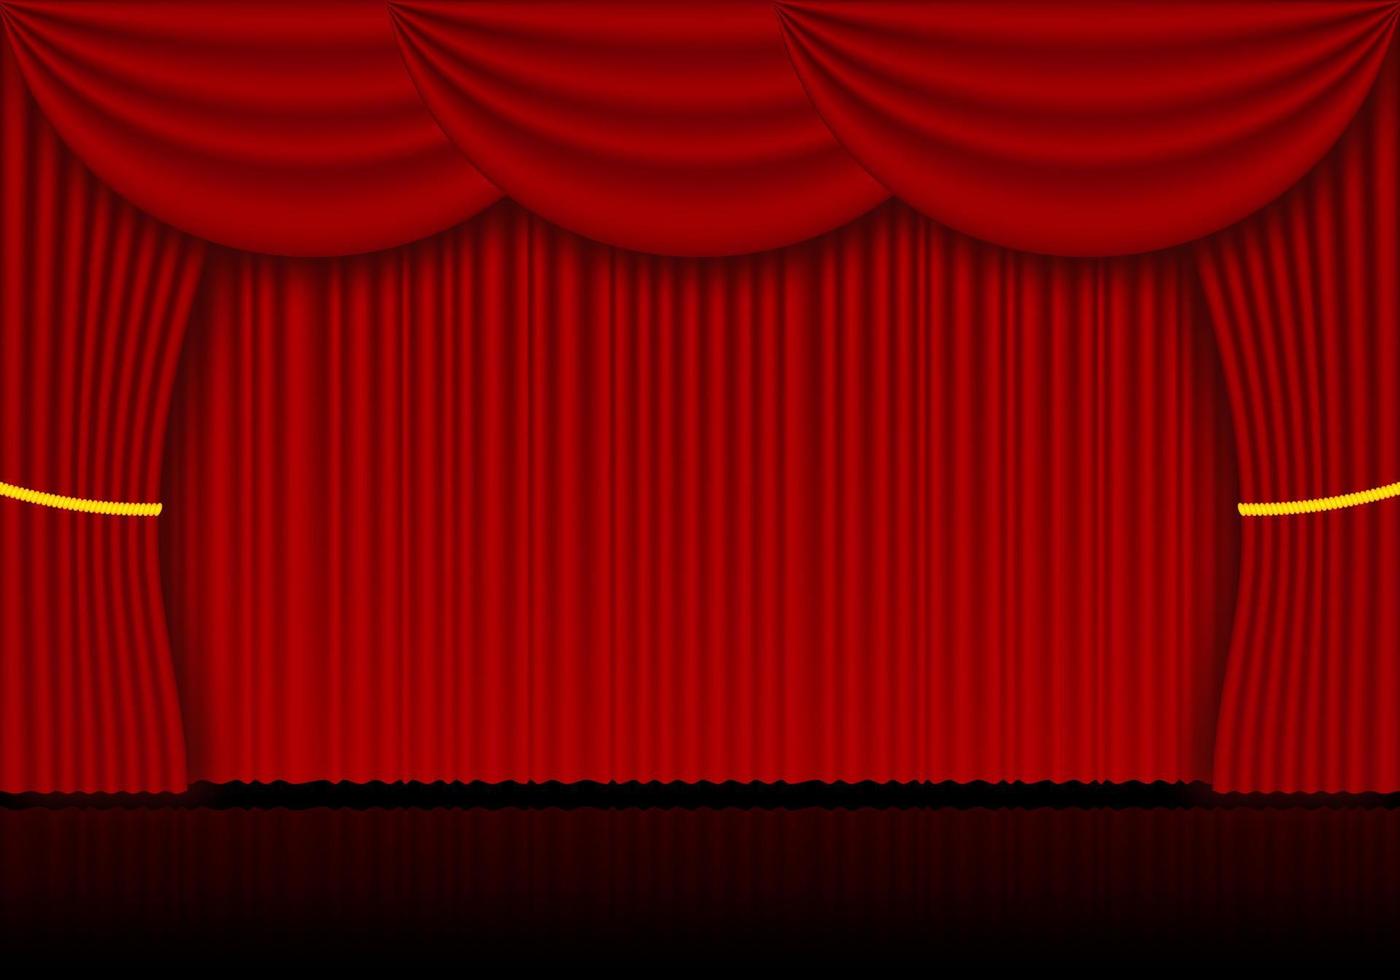 cortinas rojas de ópera, cine o teatro. foco en el fondo de las cortinas de terciopelo cerradas. ilustración vectorial vector